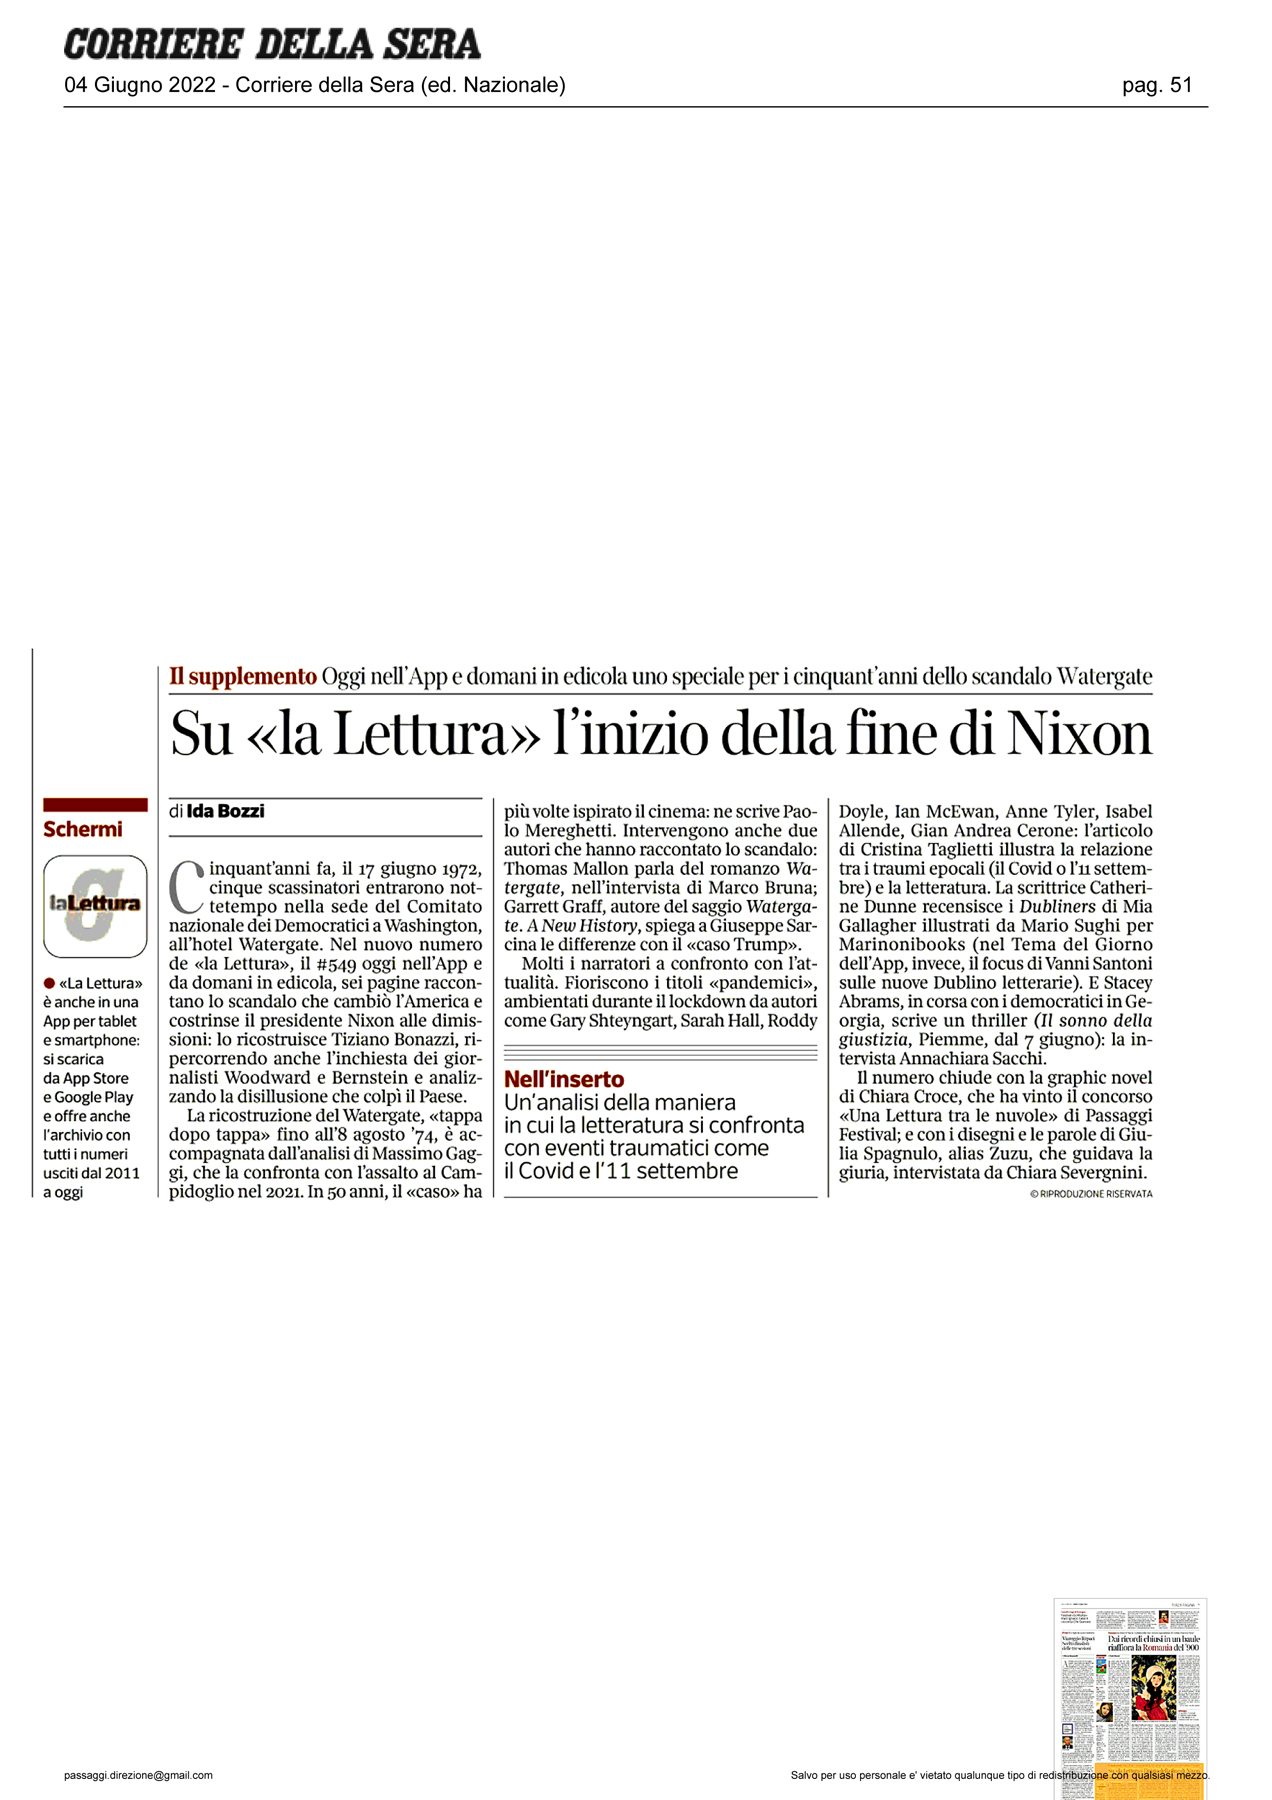 Corriere_della_Sera-su-la-lettura-l-inizio-della-fine-di-nixon